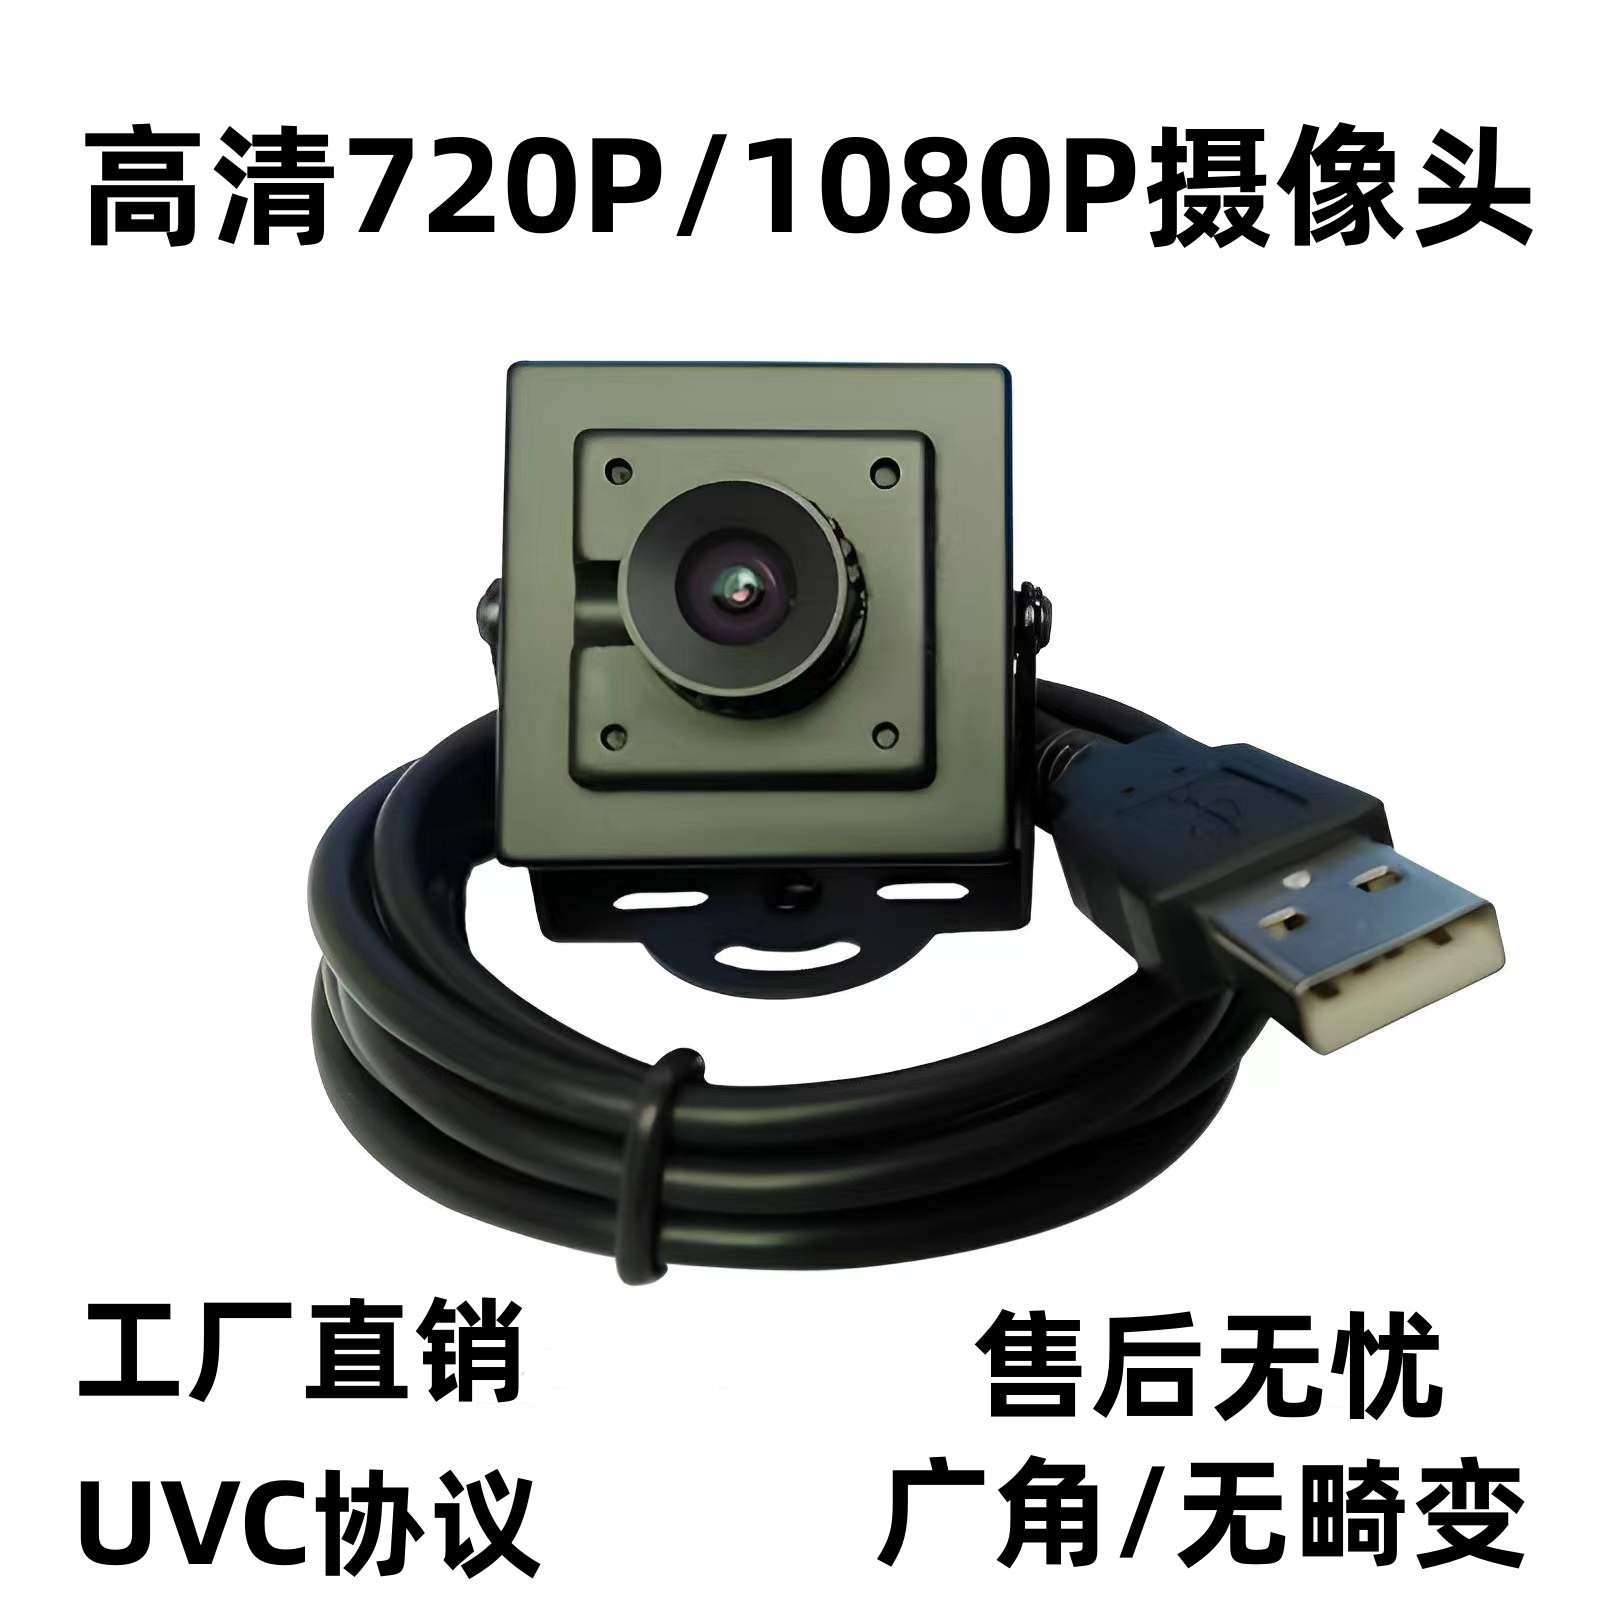 1080P高清usb摄像头模组免驱动自助设备人脸识别广角镜头工业相机